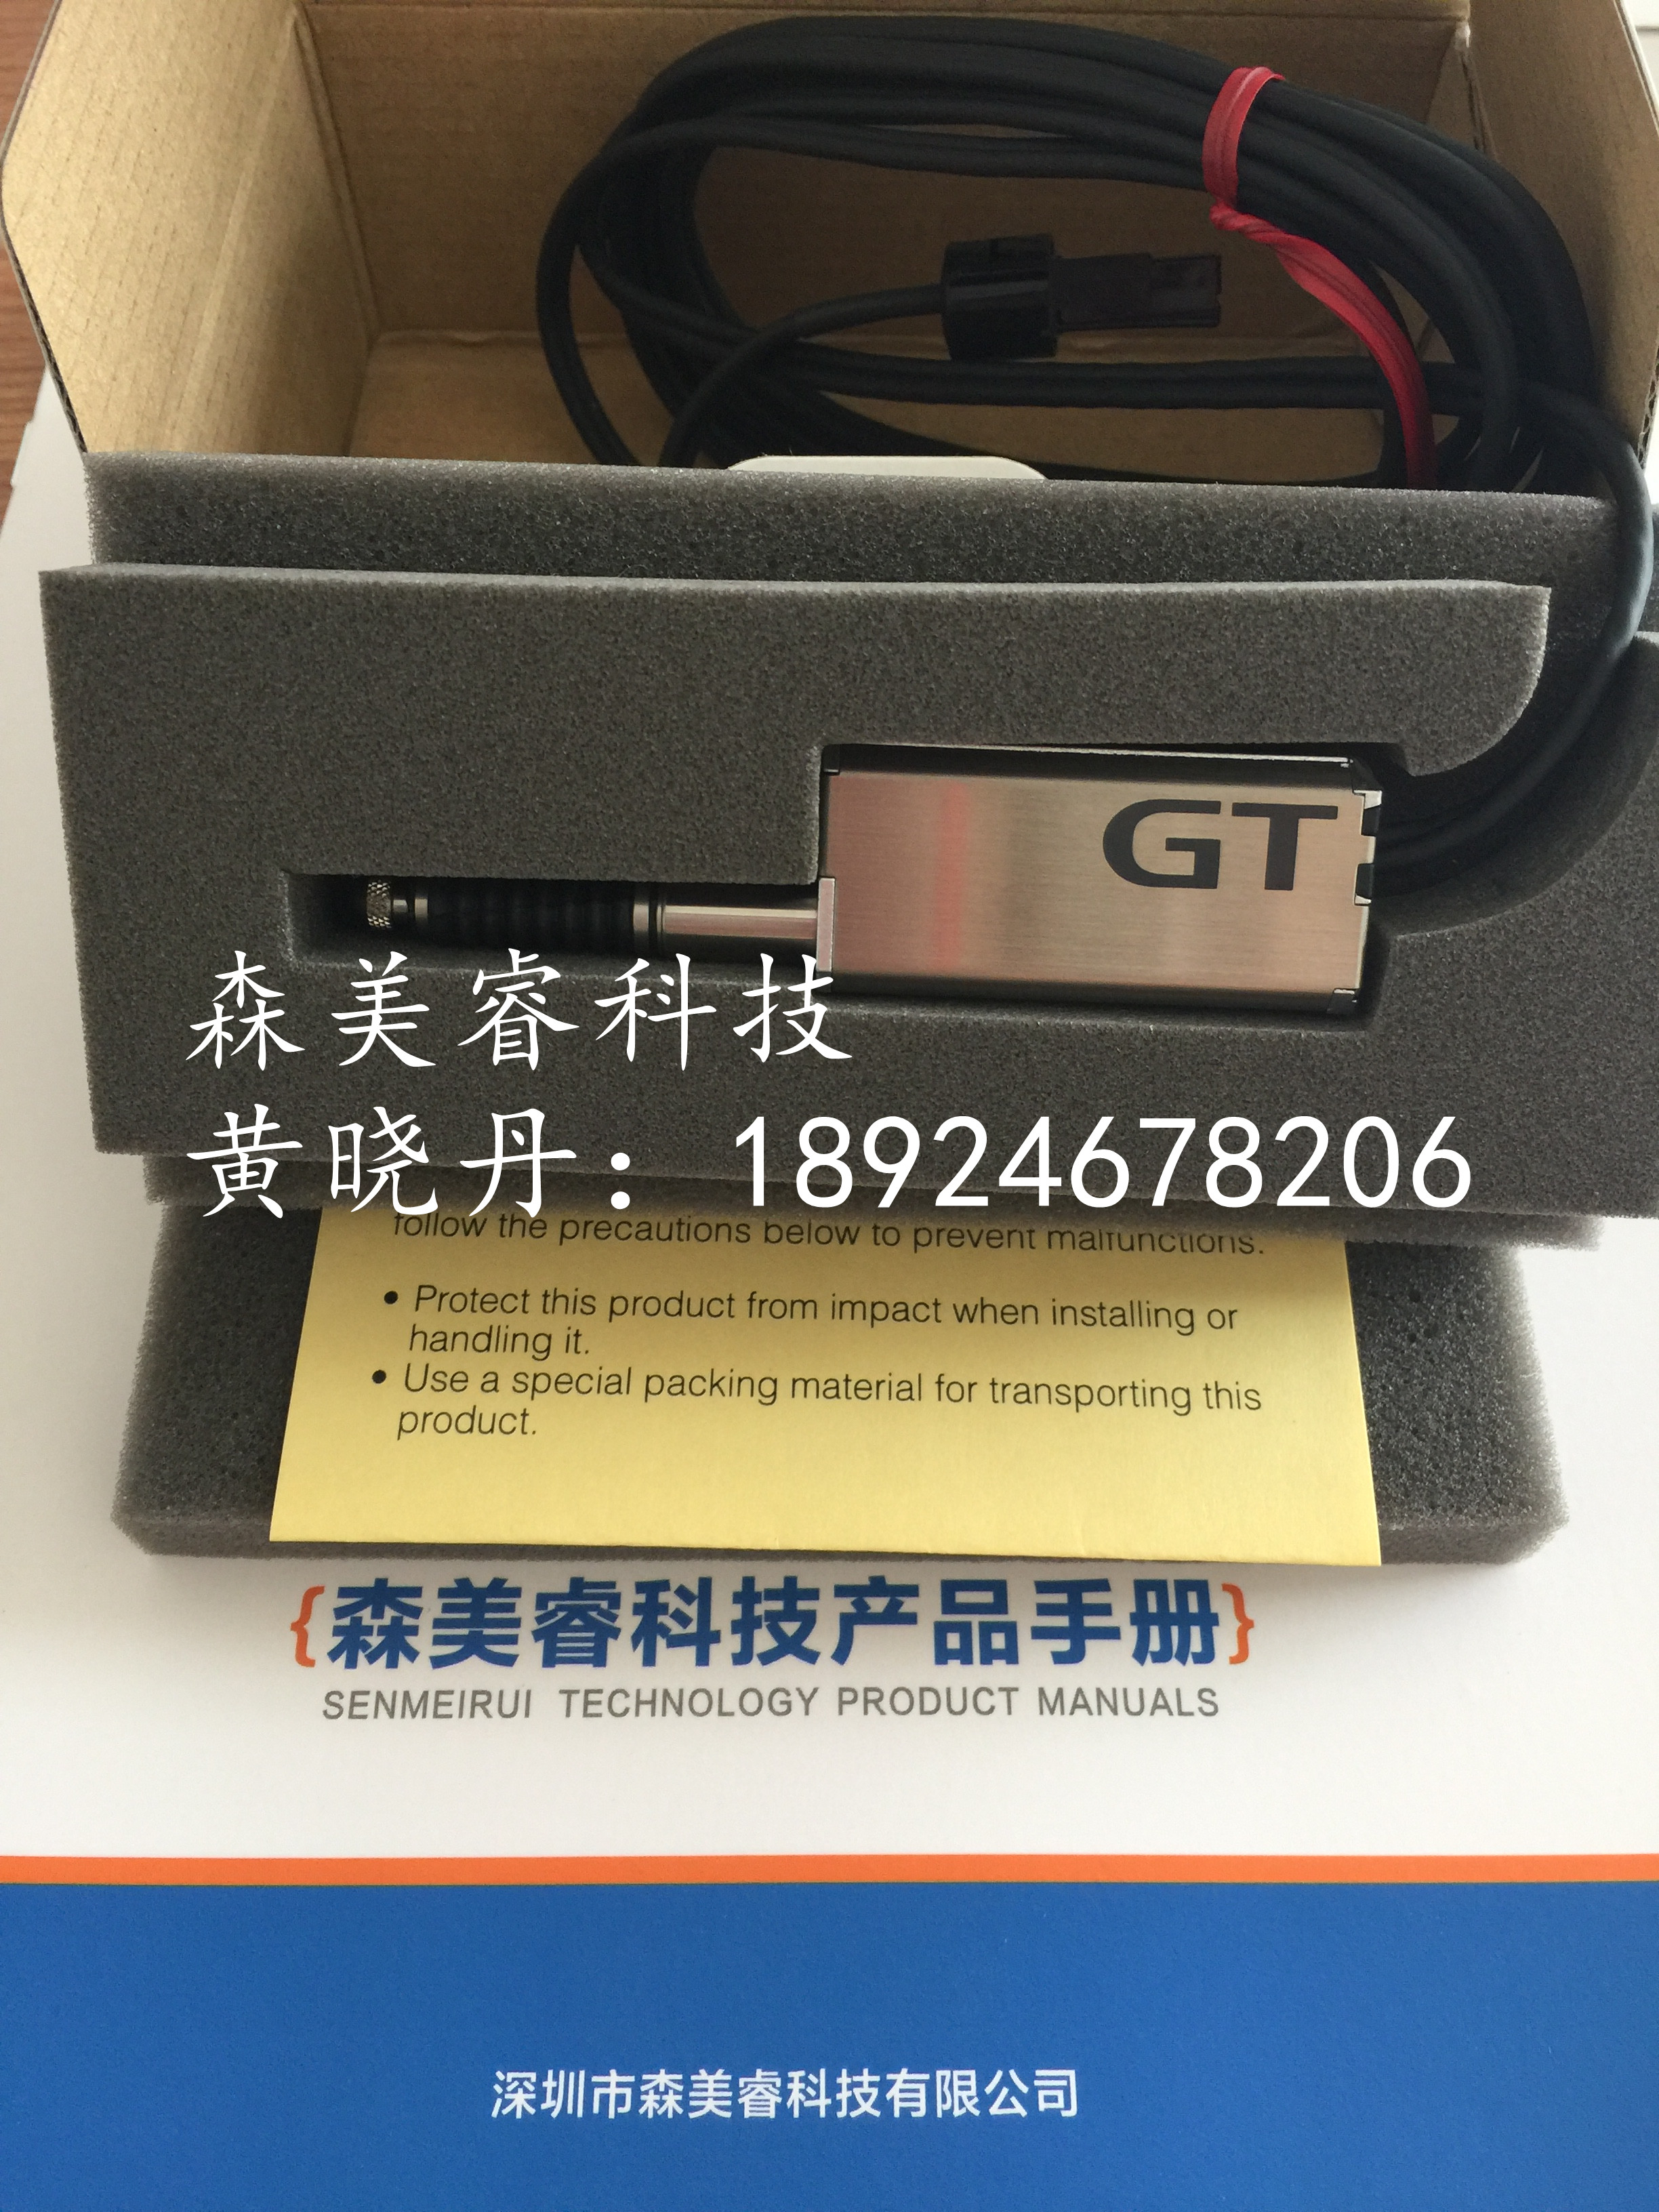 原装 基恩士 GT2-550高精度数字传感器 接触式传感器,数字接触传感器,接触式位移传感器,GT2-550,GT2-500